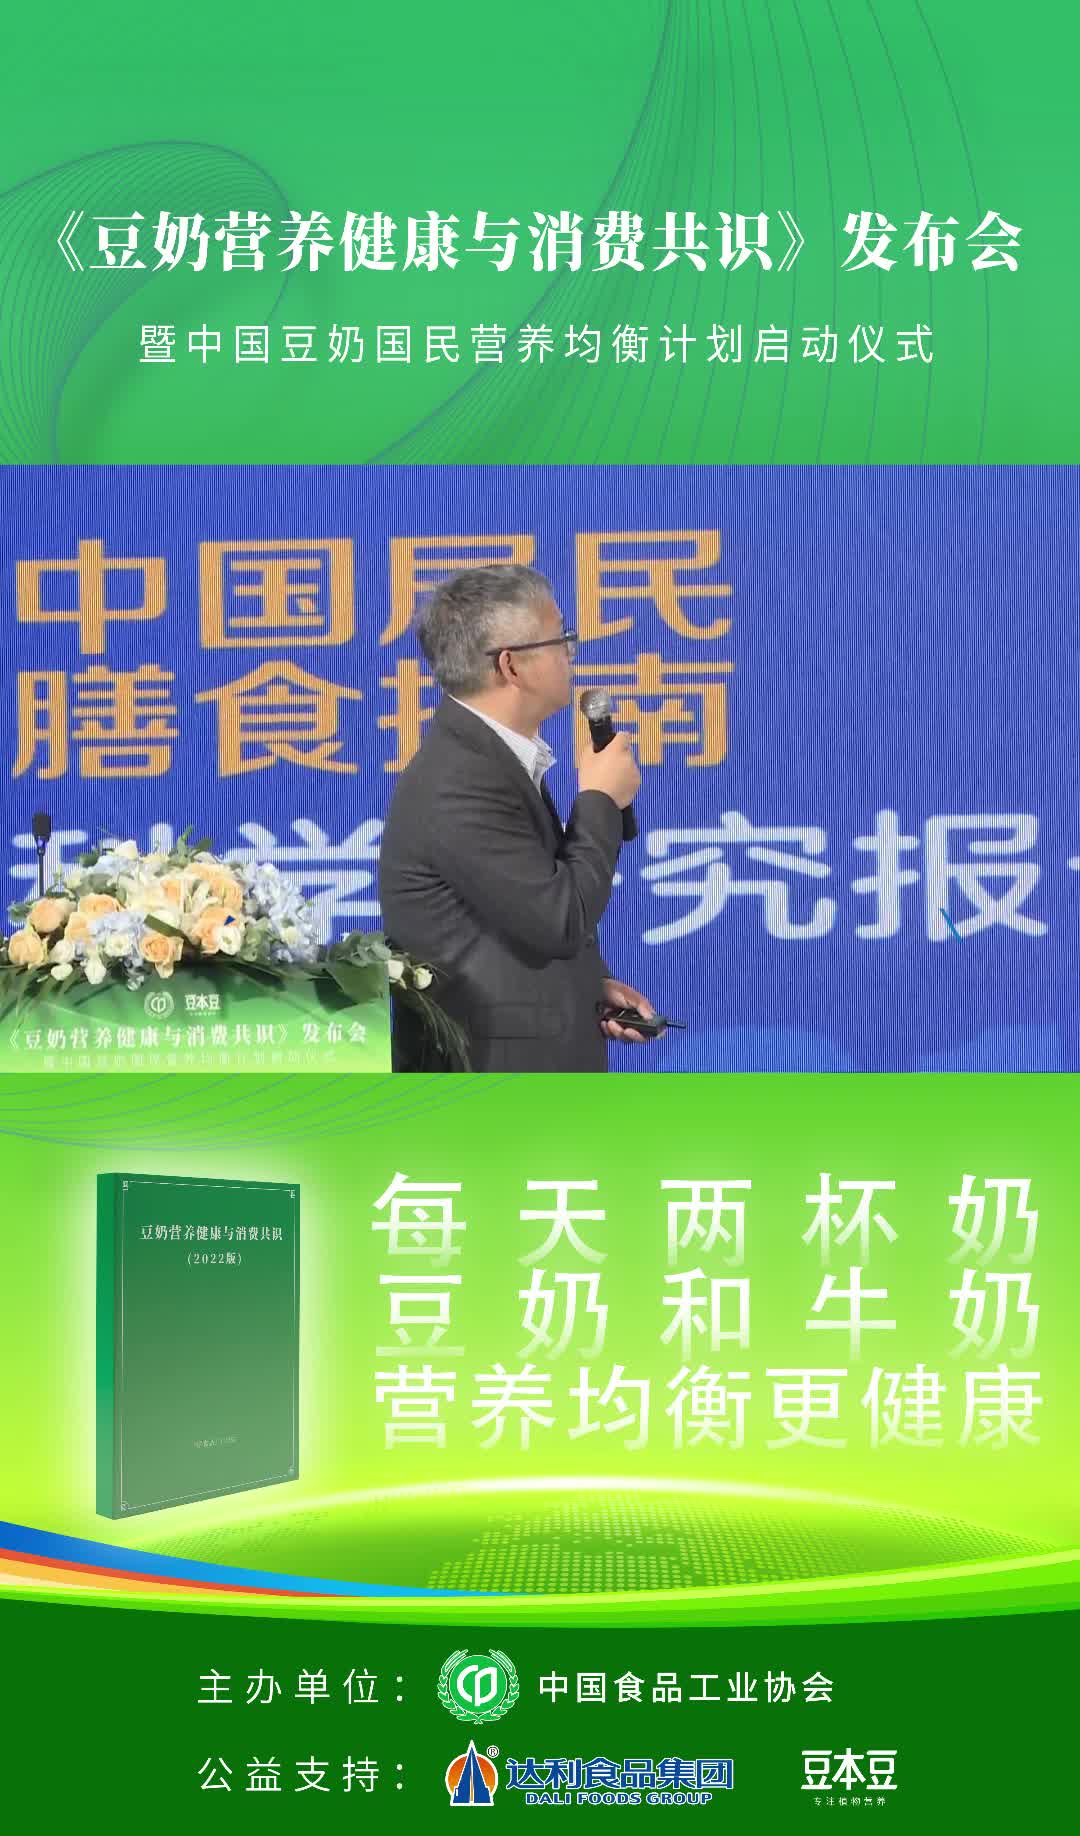 中国疾病预防控制中心营养与健康所、食品科学技术室副主任黄建：“豆奶应该向科技化、营养化、大众化转型。